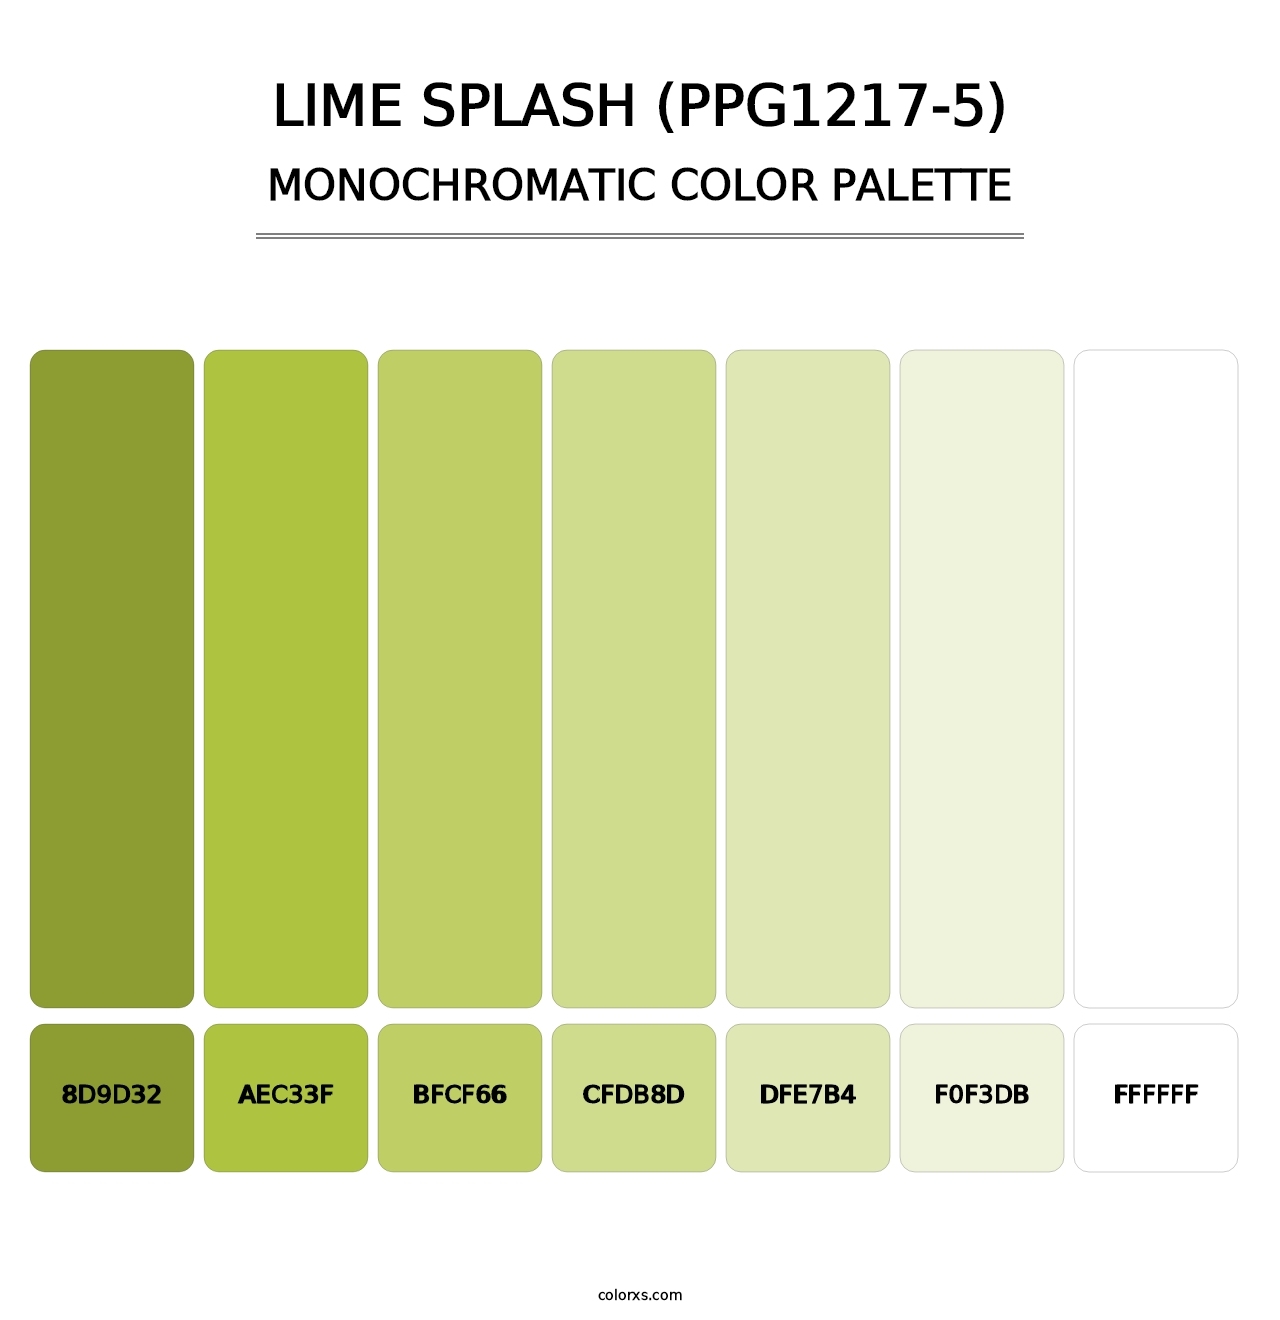 Lime Splash (PPG1217-5) - Monochromatic Color Palette